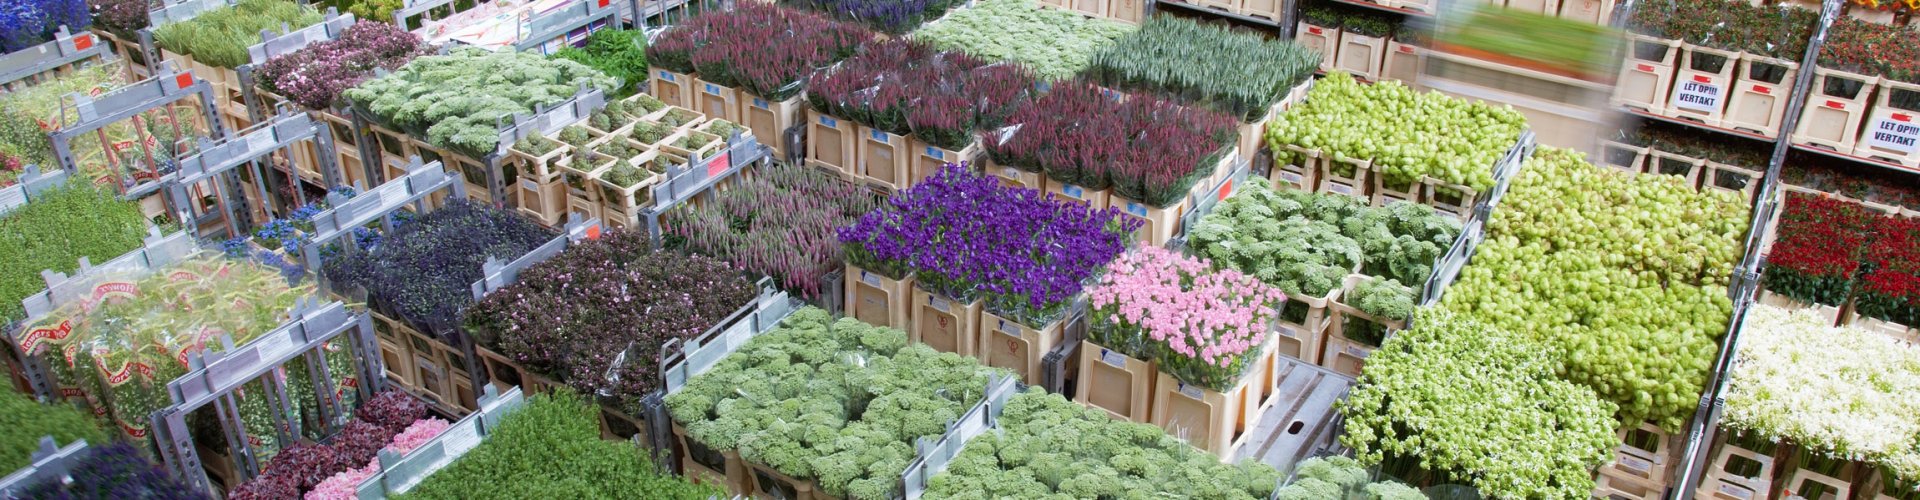 lanthaan huiselijk Maak het zwaar Bloemengroothandel PP Flowers | Online webshop | voor bloemisten